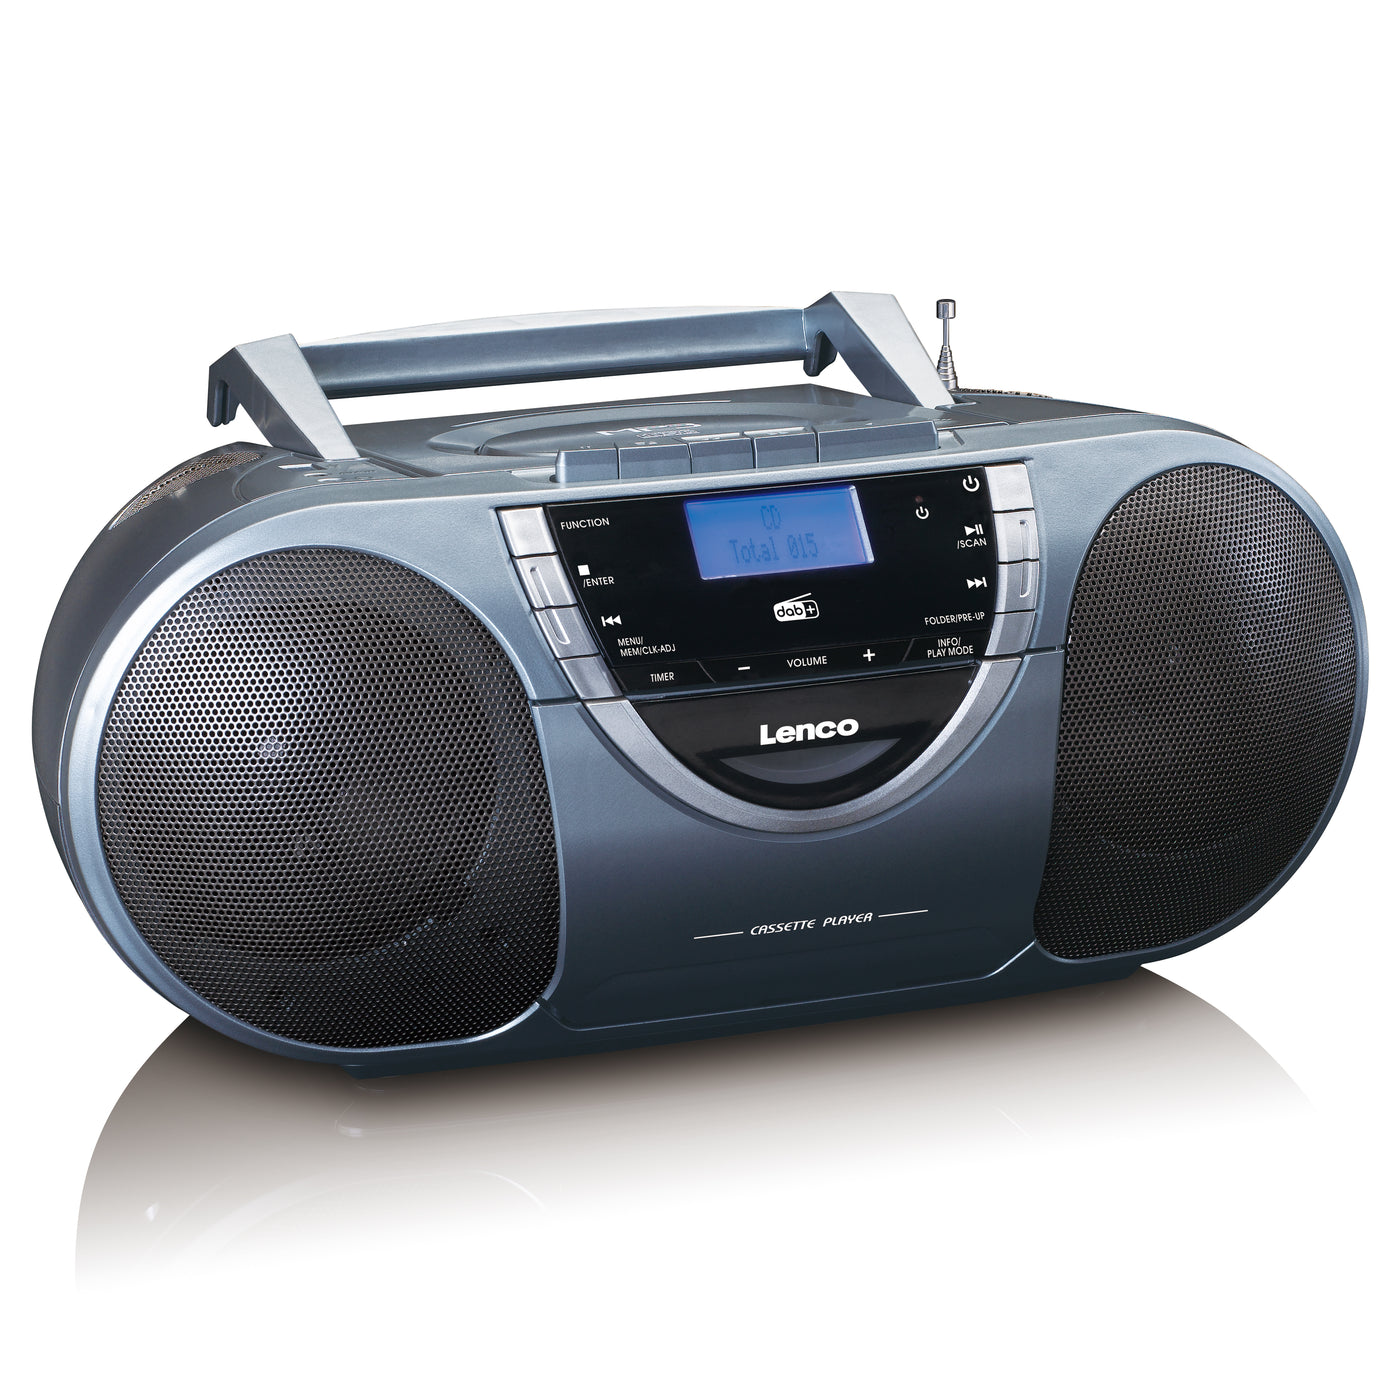 Lenco SCD-6800GY - Boombox avec radio DAB+, FM et lecteur CD/ MP3